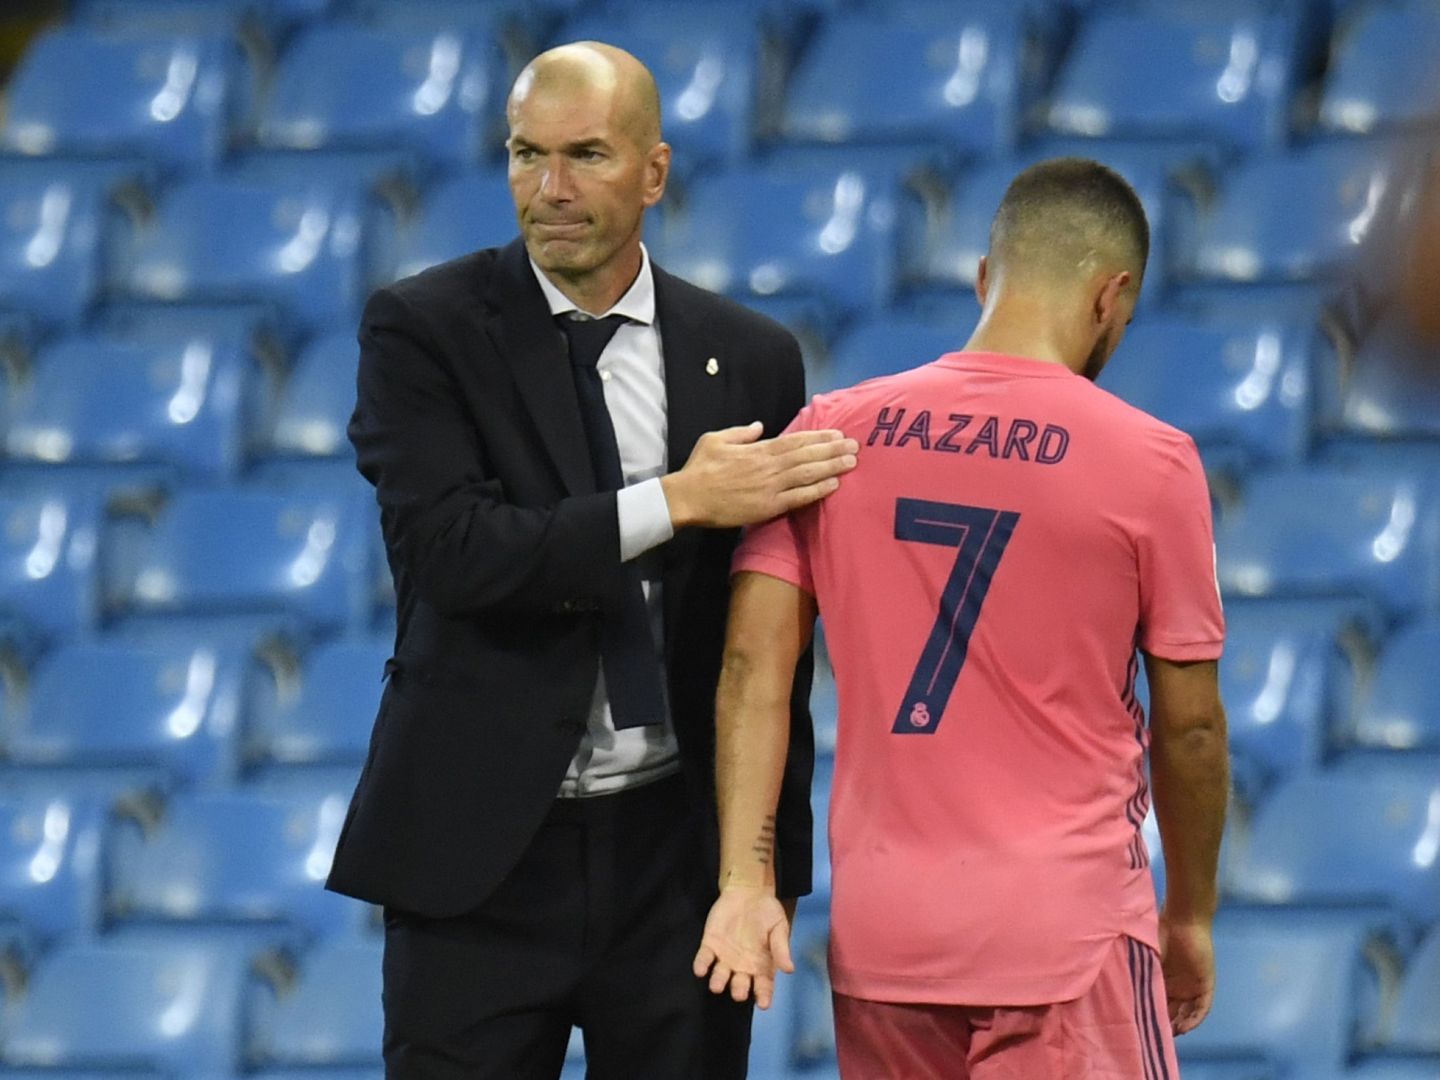 Zidane consuela a Hazard tras salir cojeando del partido. (Efe)